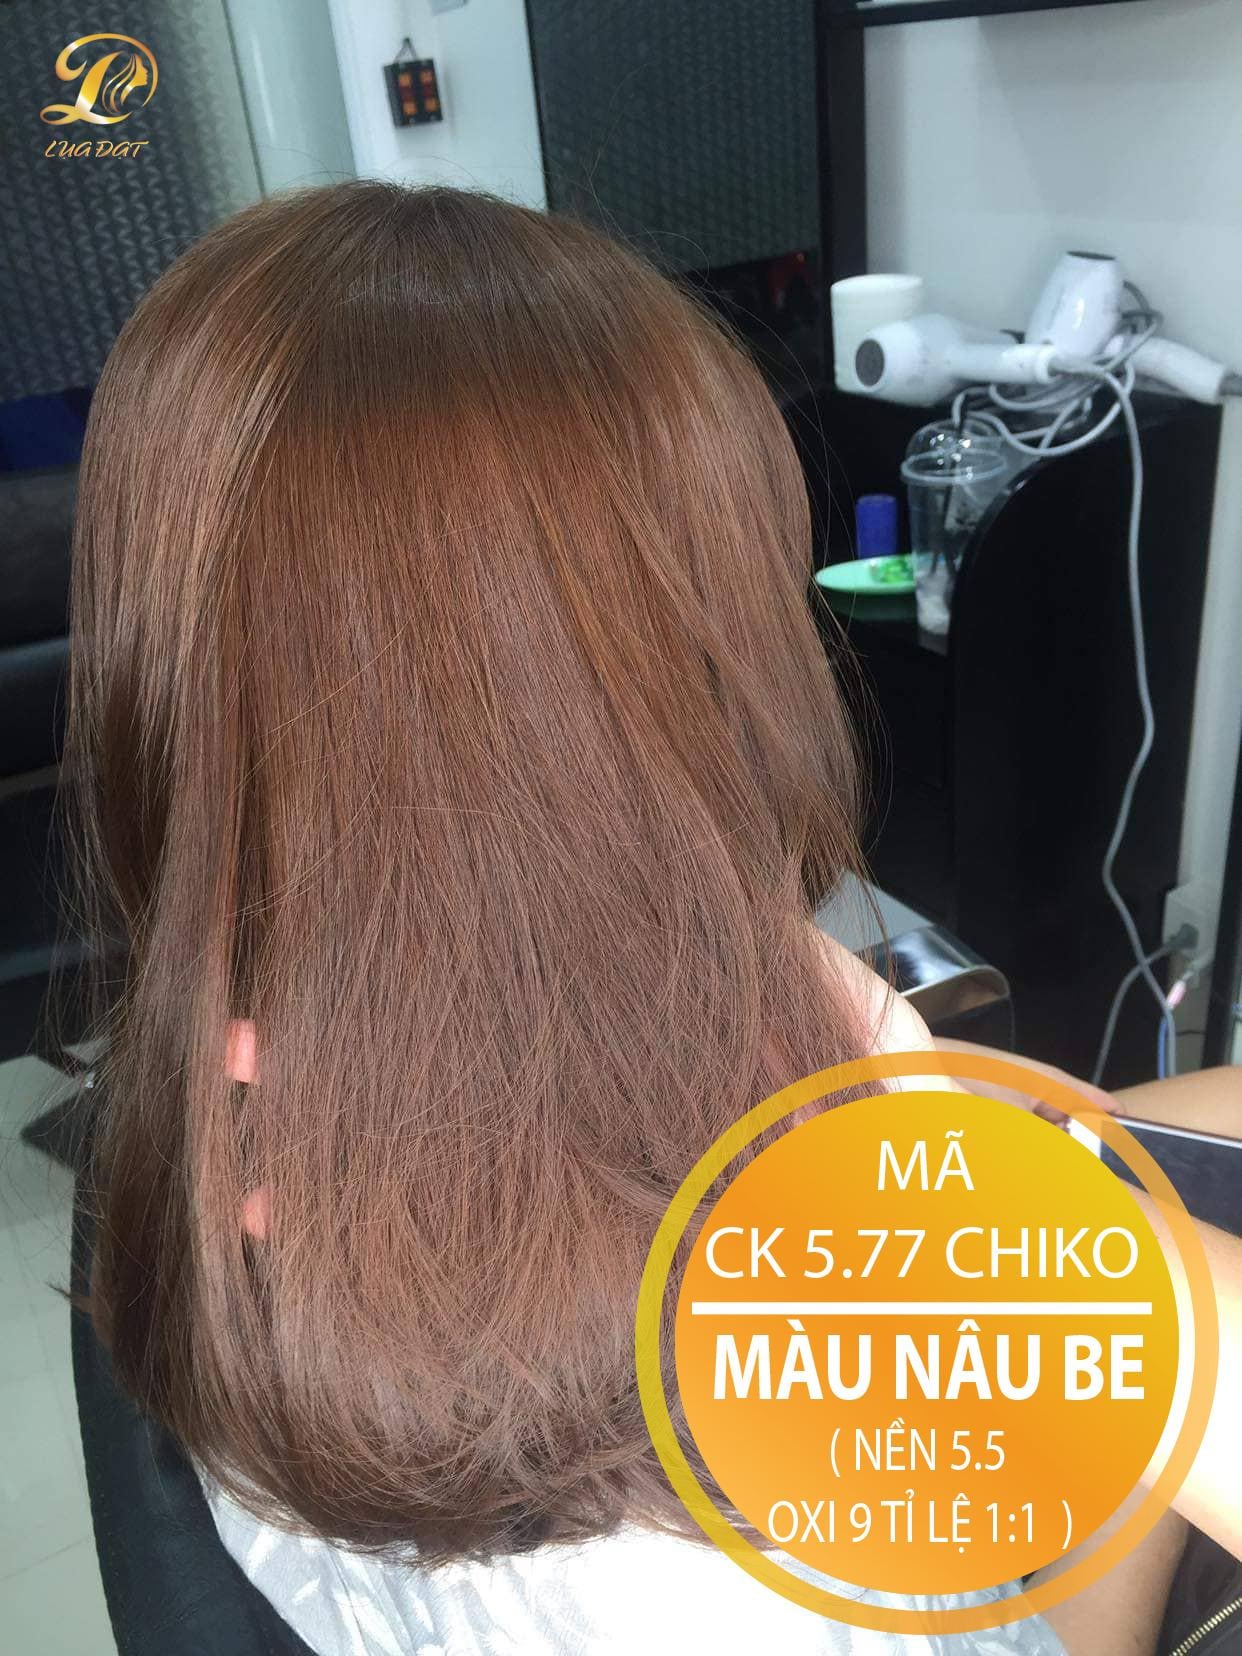 Bạn yêu thích màu tóc tươi tắn và thời thượng? Hãy sử dụng thuốc nhuộm tóc Chiko để tạo ra màu tuyệt vời nhé! Bọt sẽ thấm sâu vào tóc, tạo ra màu sắc hoàn hảo trong một thời gian ngắn.